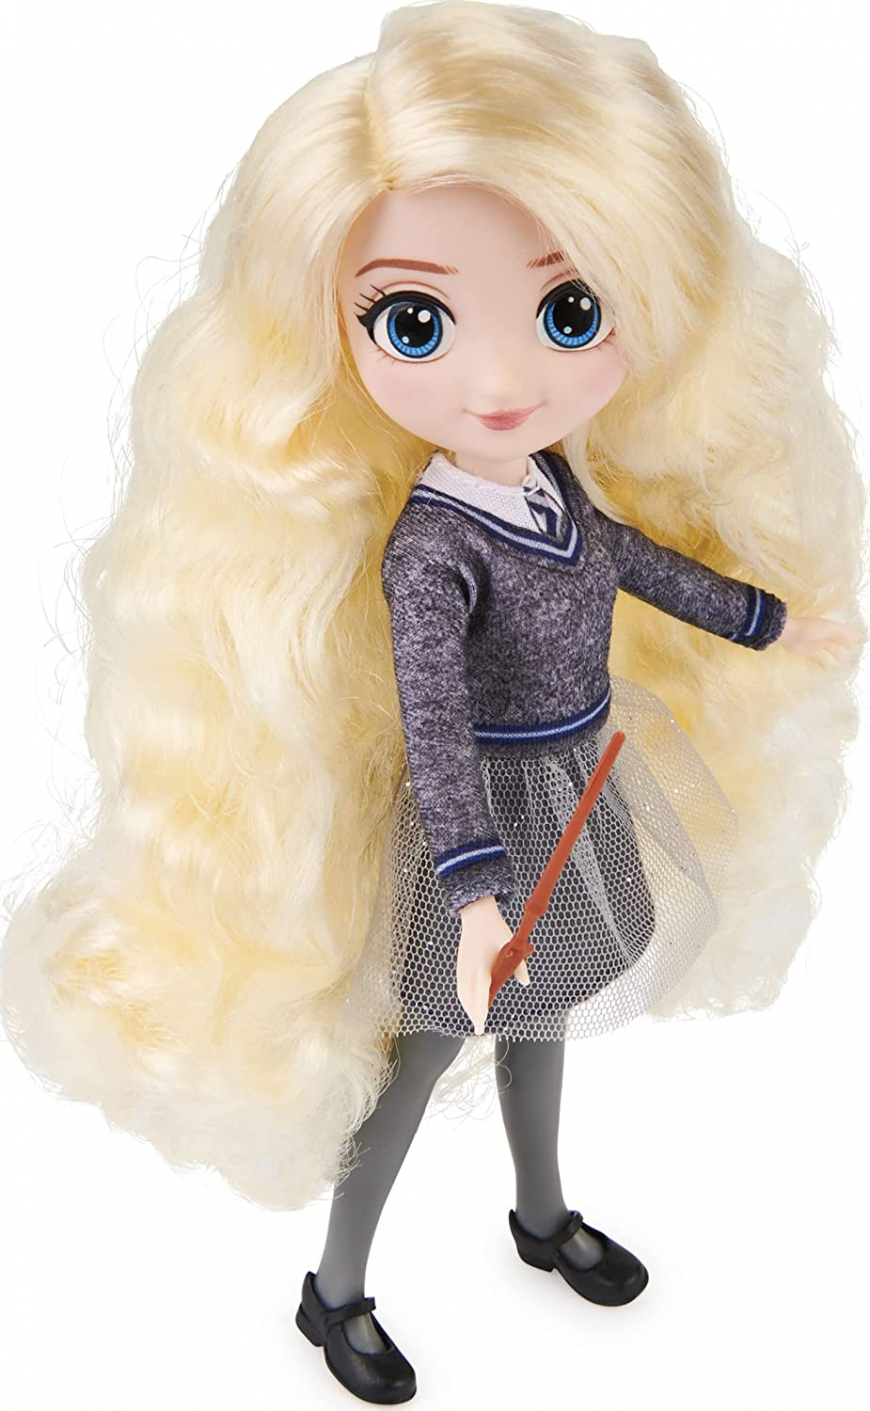 Luna Lovegood Wizarding World doll from Spin Master